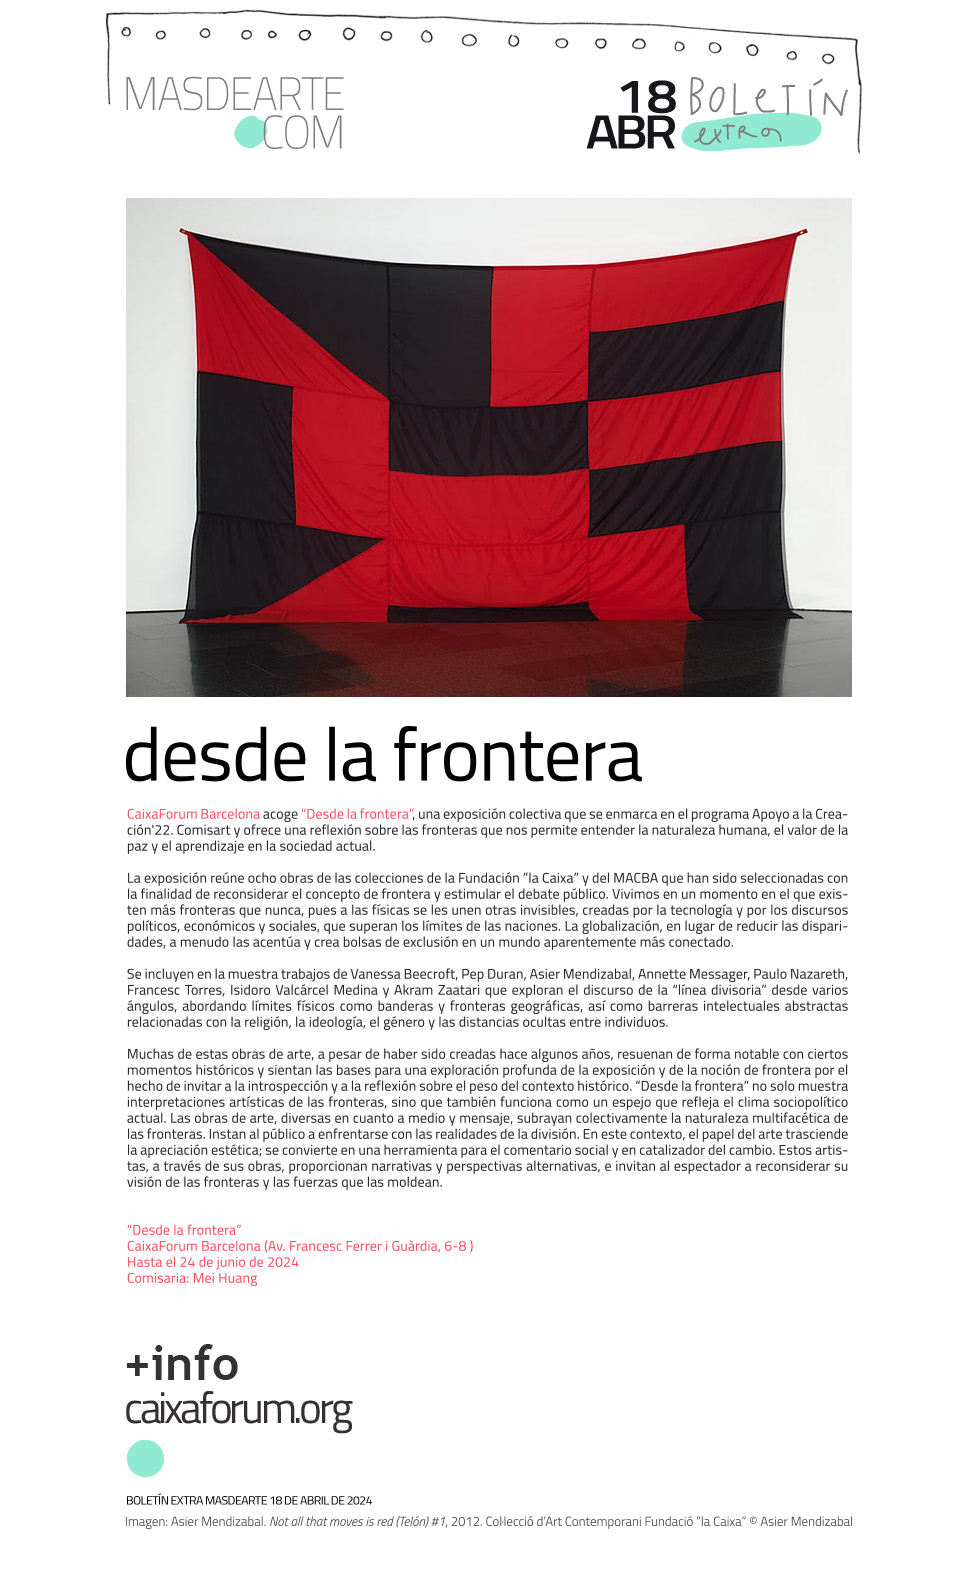 Extra masdearte: Desde la frontera, exposición en CaixaForum Barcelona. 
